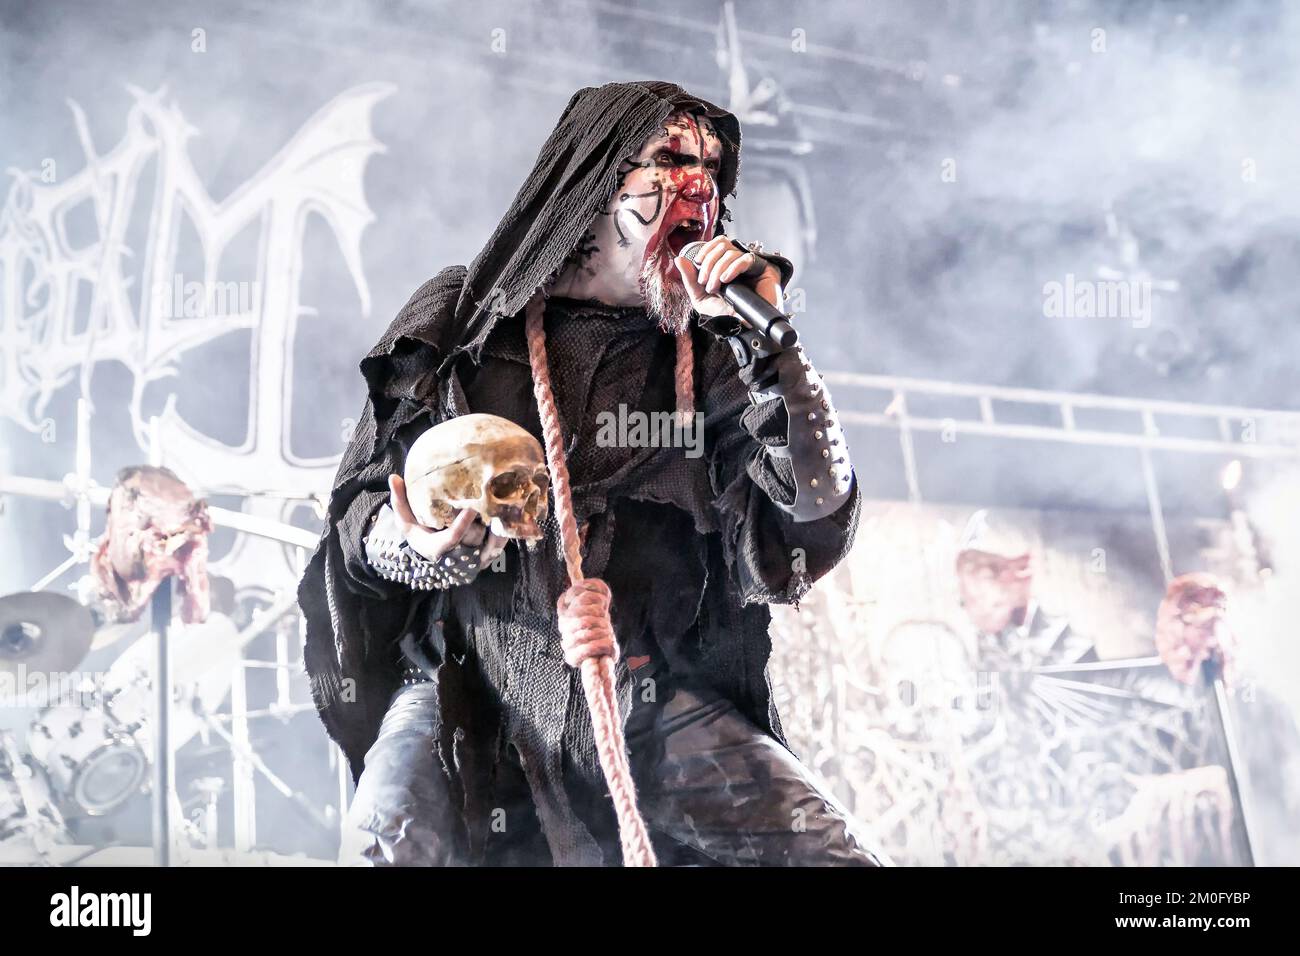 La band norvegese di metallo nero Mayhem (spesso chiamata True Mayhem) suona un concerto a Pumpehuset a Copenhagen. Attila Csihar, cantante della band sul palco Foto Stock